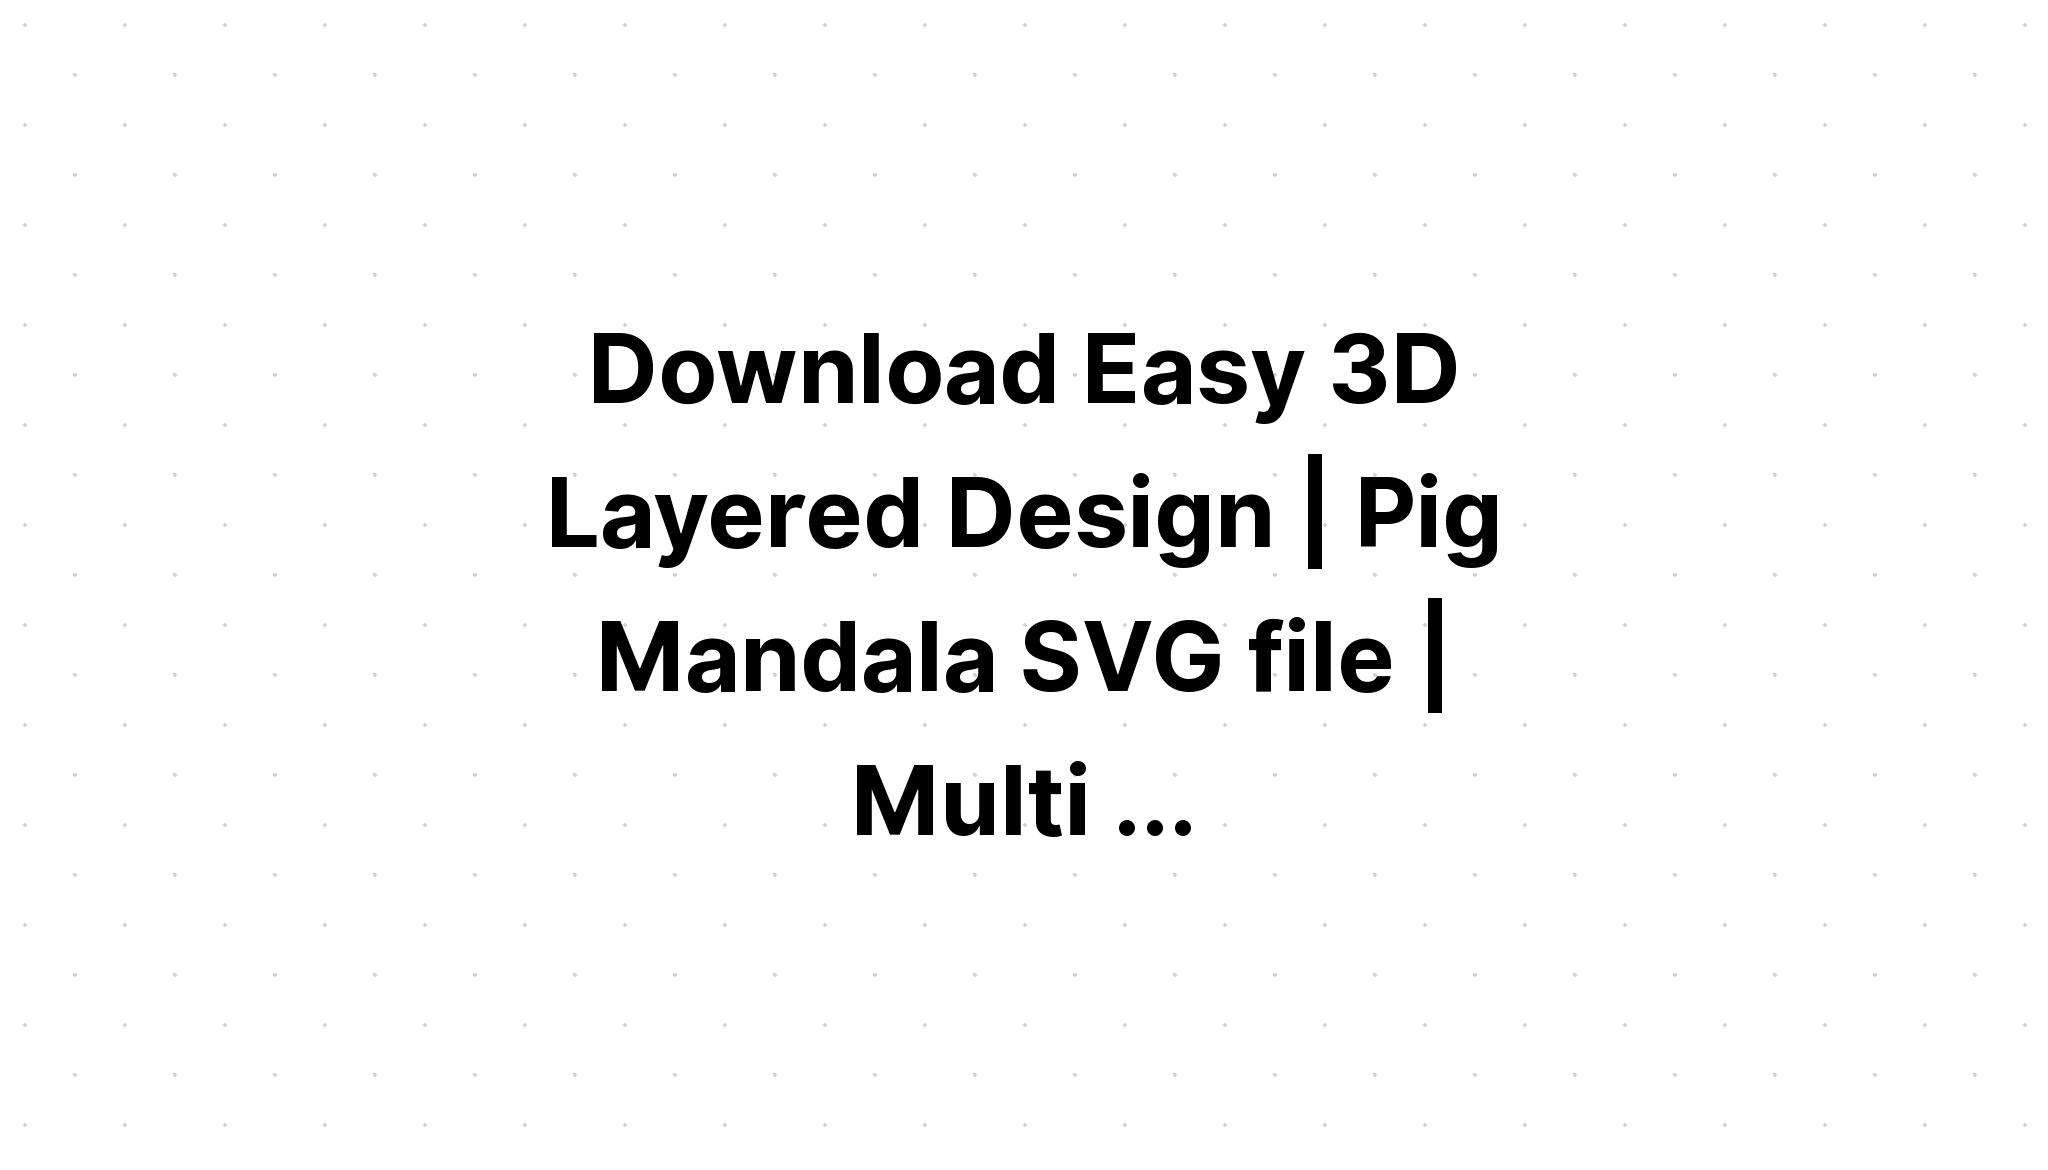 Download Multi Layered Turkey Mandala Svg Free For Cricut - Layered SVG Cut File